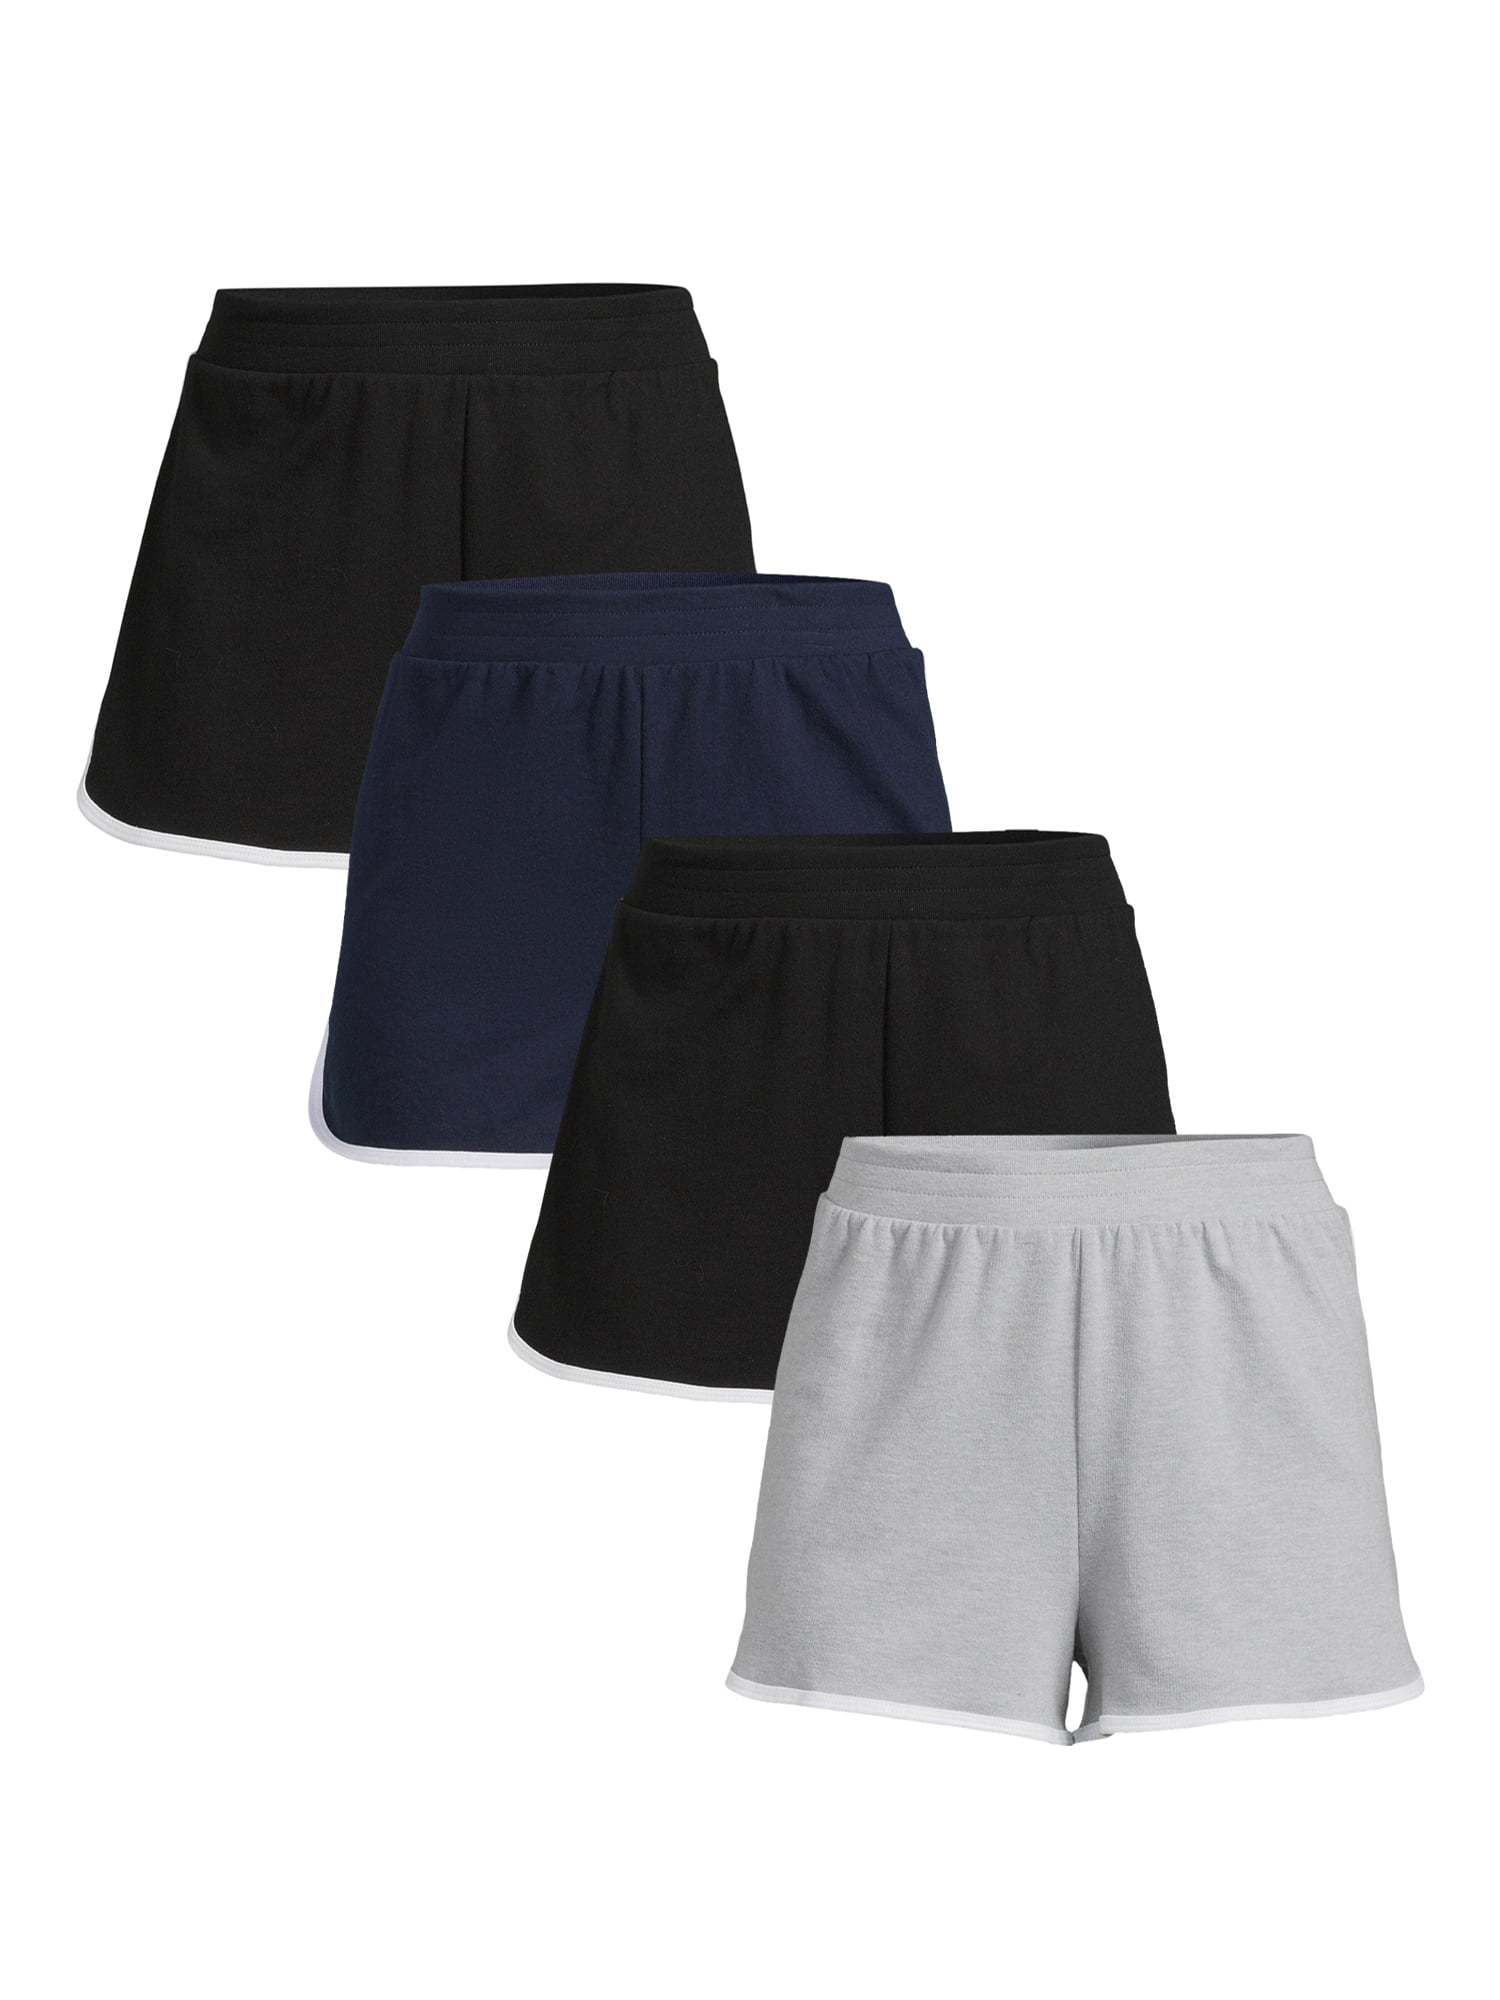 No Boundaries Juniors' Shorts Just $3.98 at Walmart